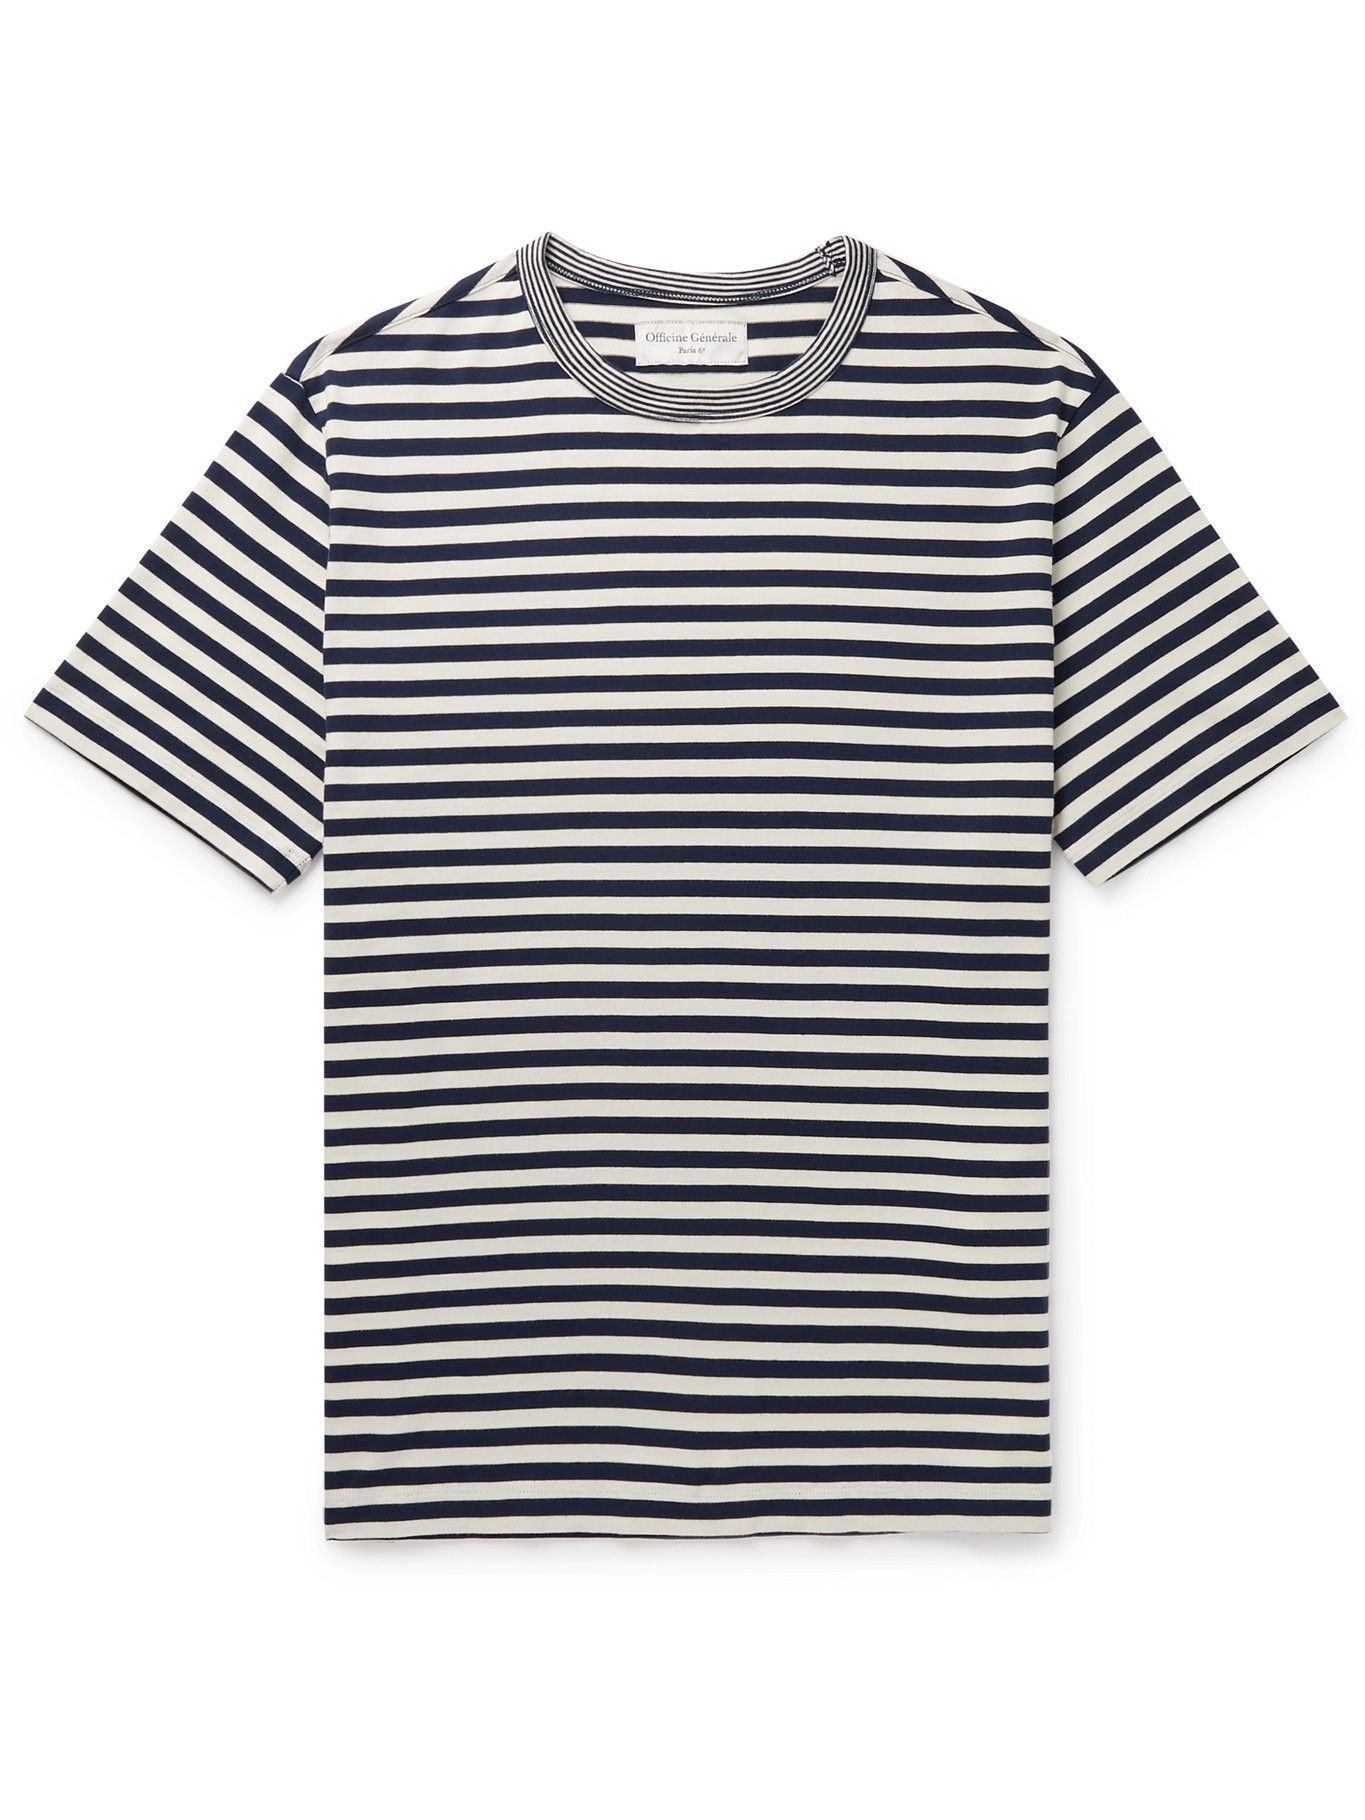 OFFICINE GÉNÉRALE - Garment-Washed Striped Cotton-Jersey T-Shirt - Blue ...